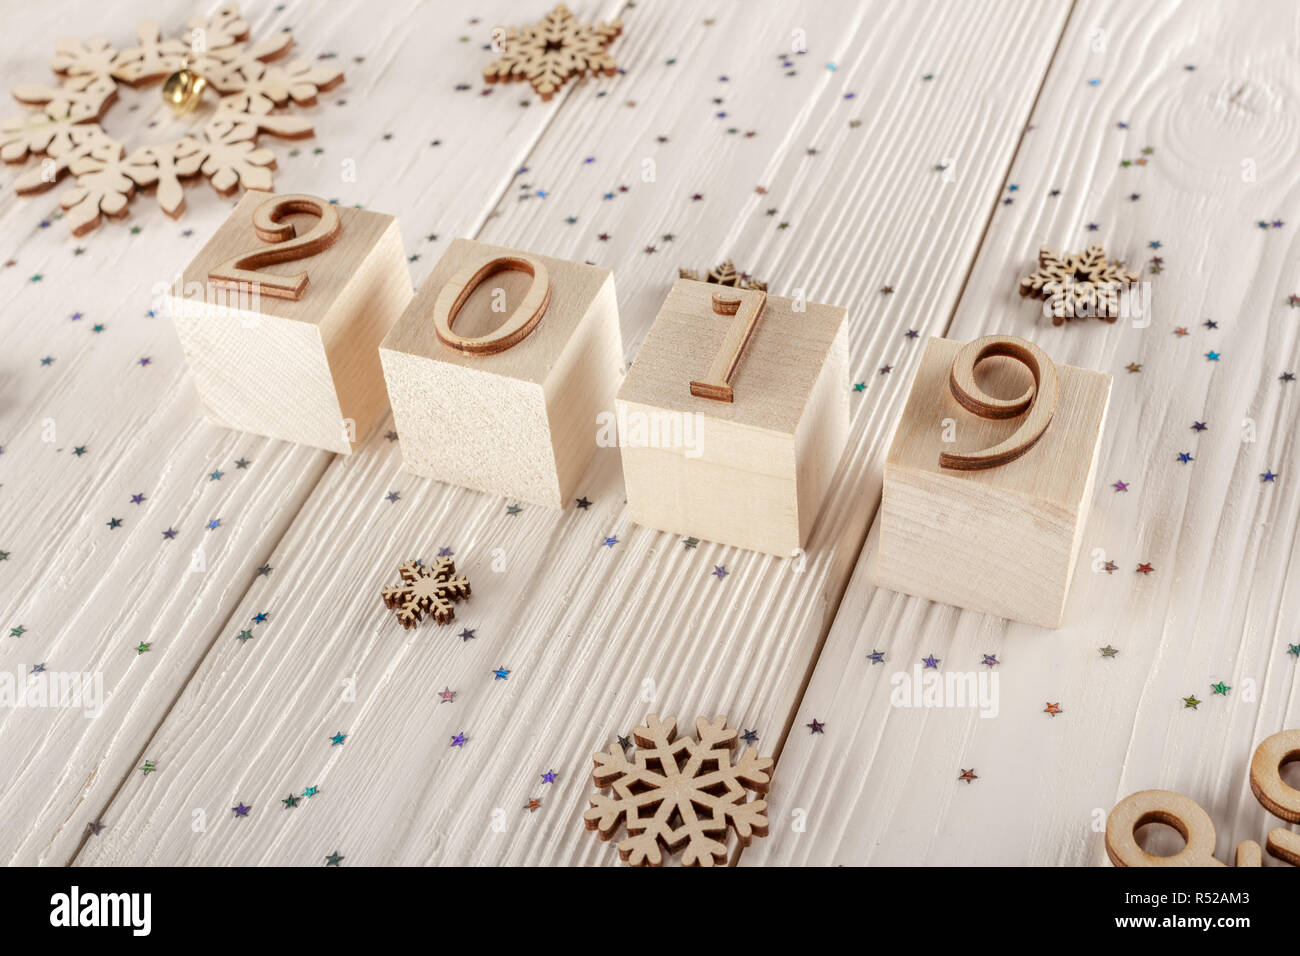 Carte de Noël, des cubes en bois sur un fond de bois. Accueil design confortable. Bonne année 2019. Banque D'Images